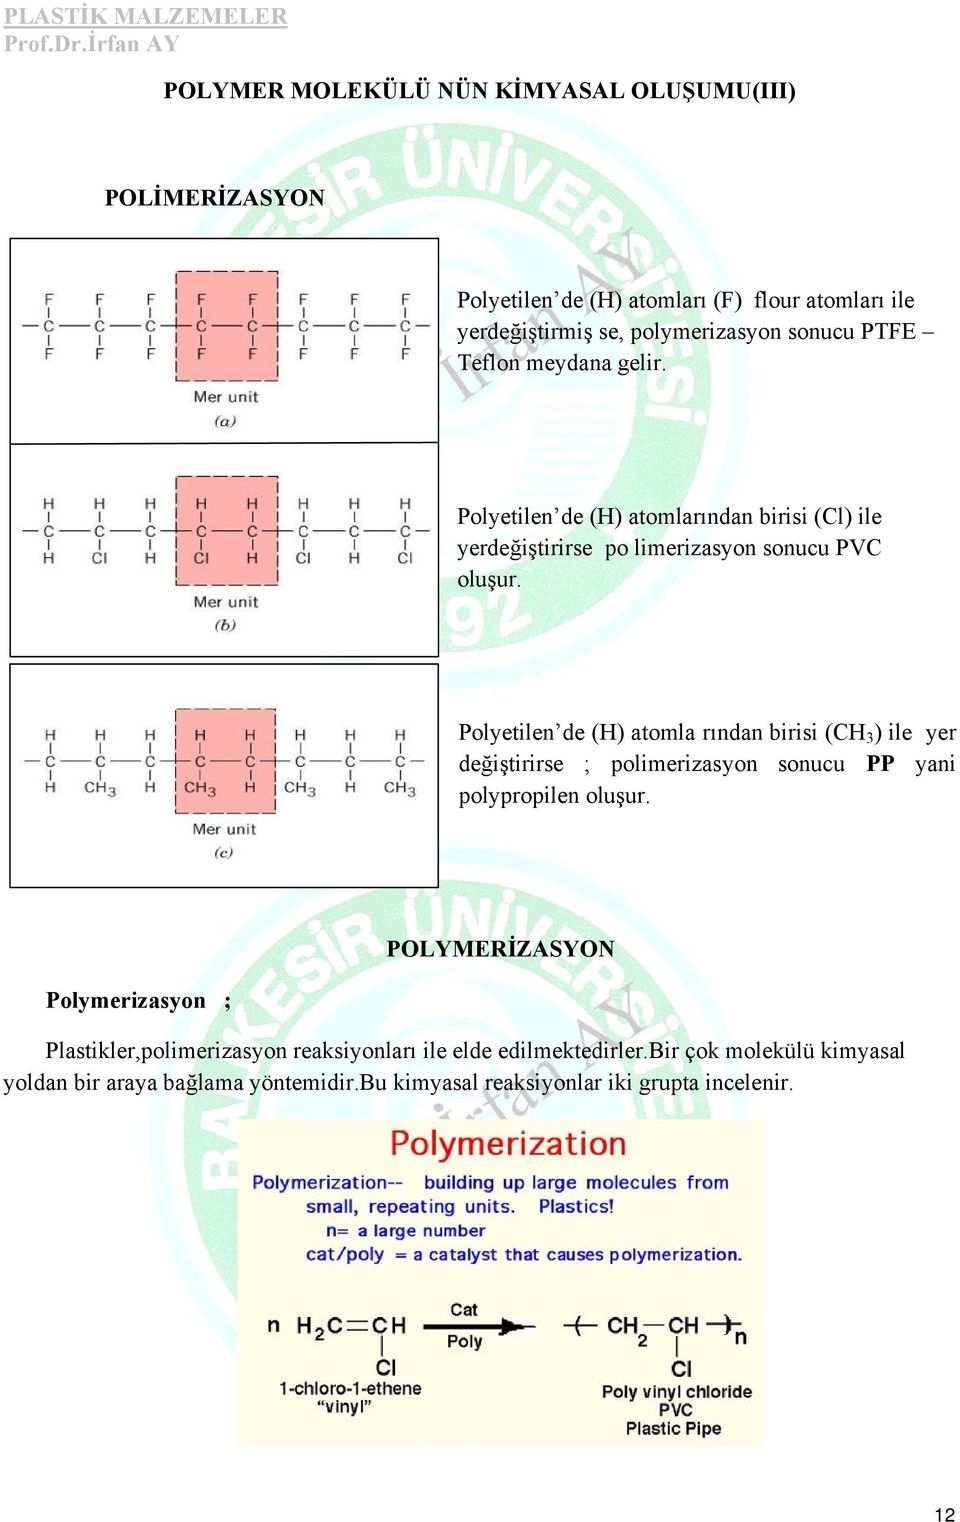 Polyetilen de (H) atomla rından birisi (CH 3 ) ile yer değiştirirse ; polimerizasyon sonucu PP yani polypropilen oluşur.